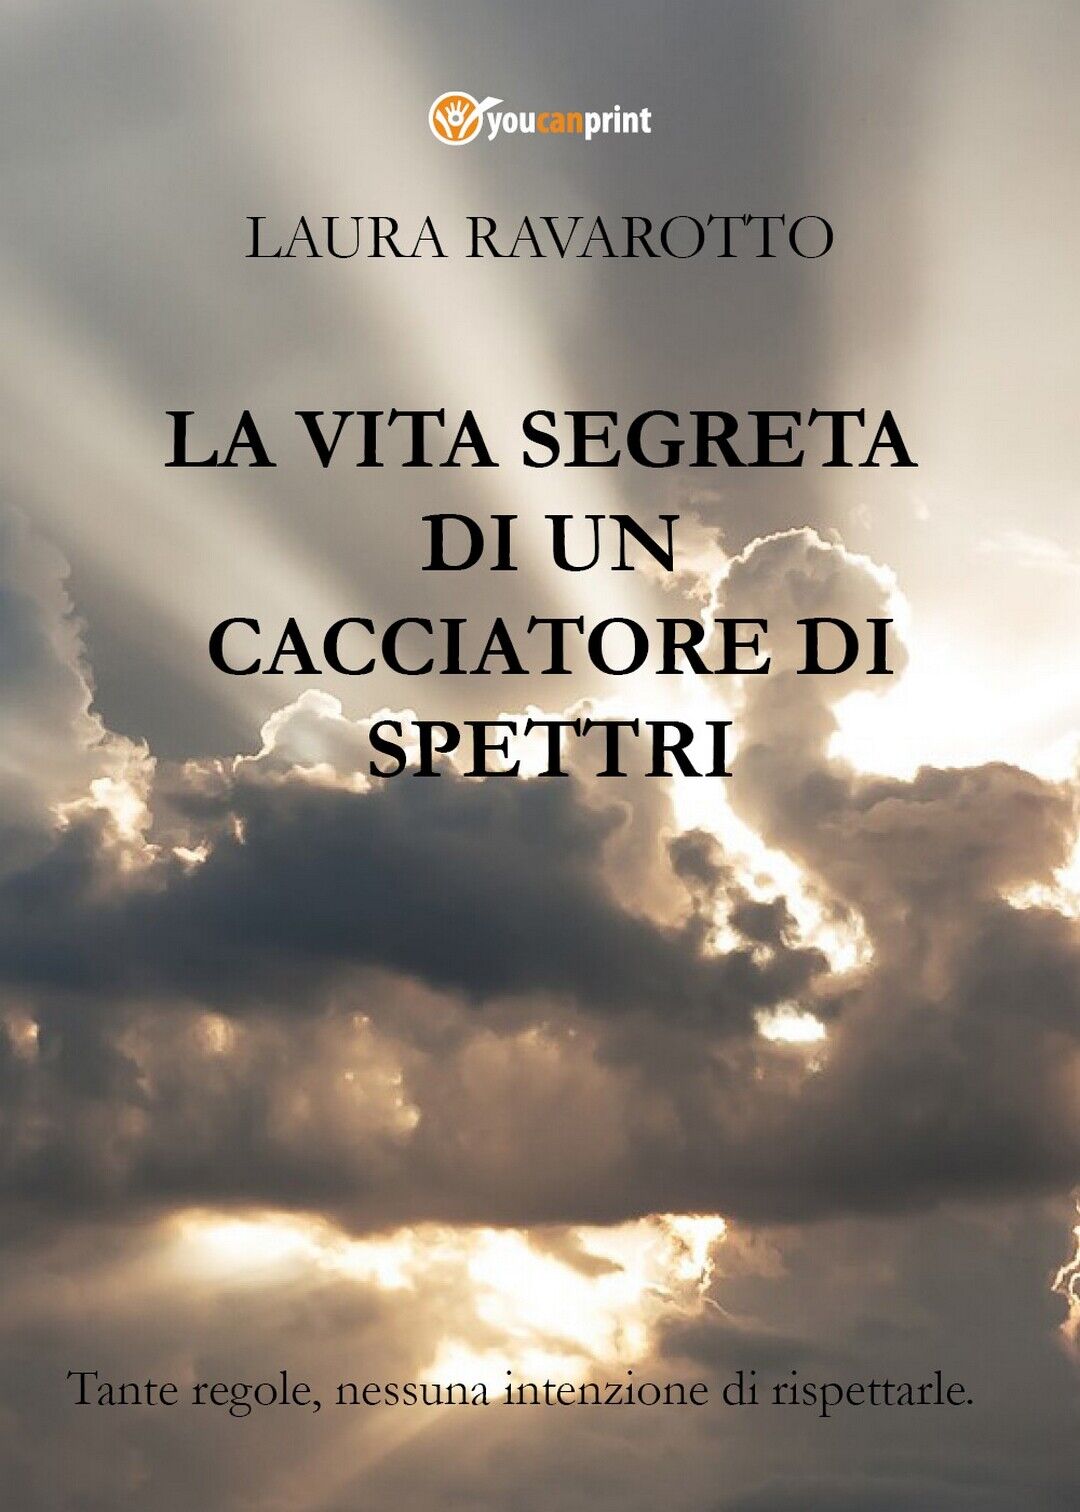 La vita segreta di un Cacciatore di Spettri, Laura Ravarotto, 2018,  Youcanprint